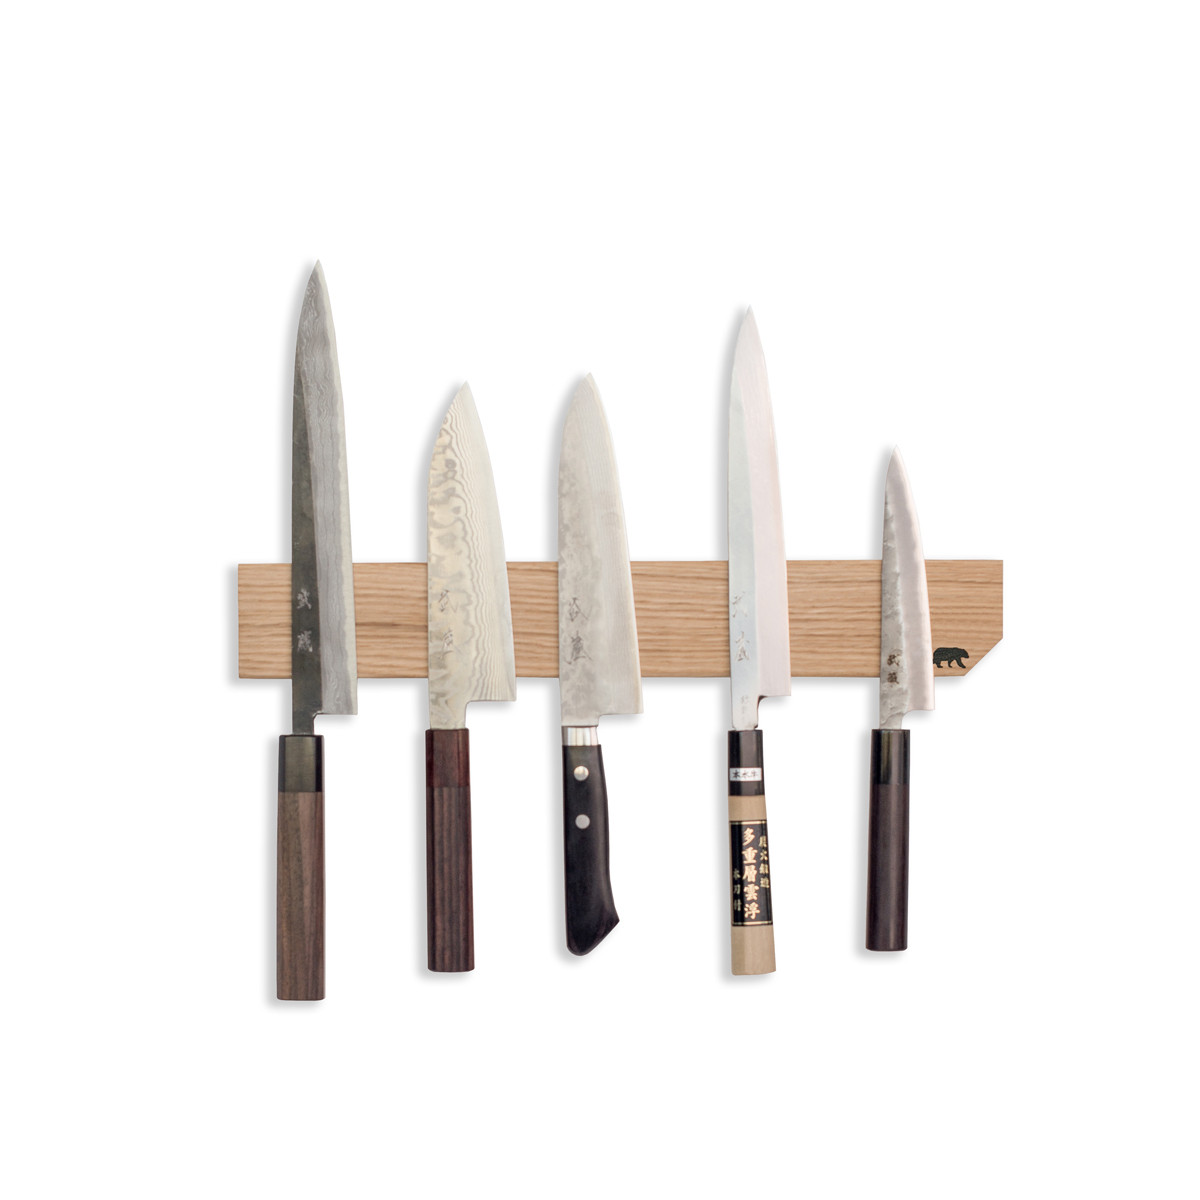 Porte couteau aimanté néodyme 45 cm avec support bois - Tom Press